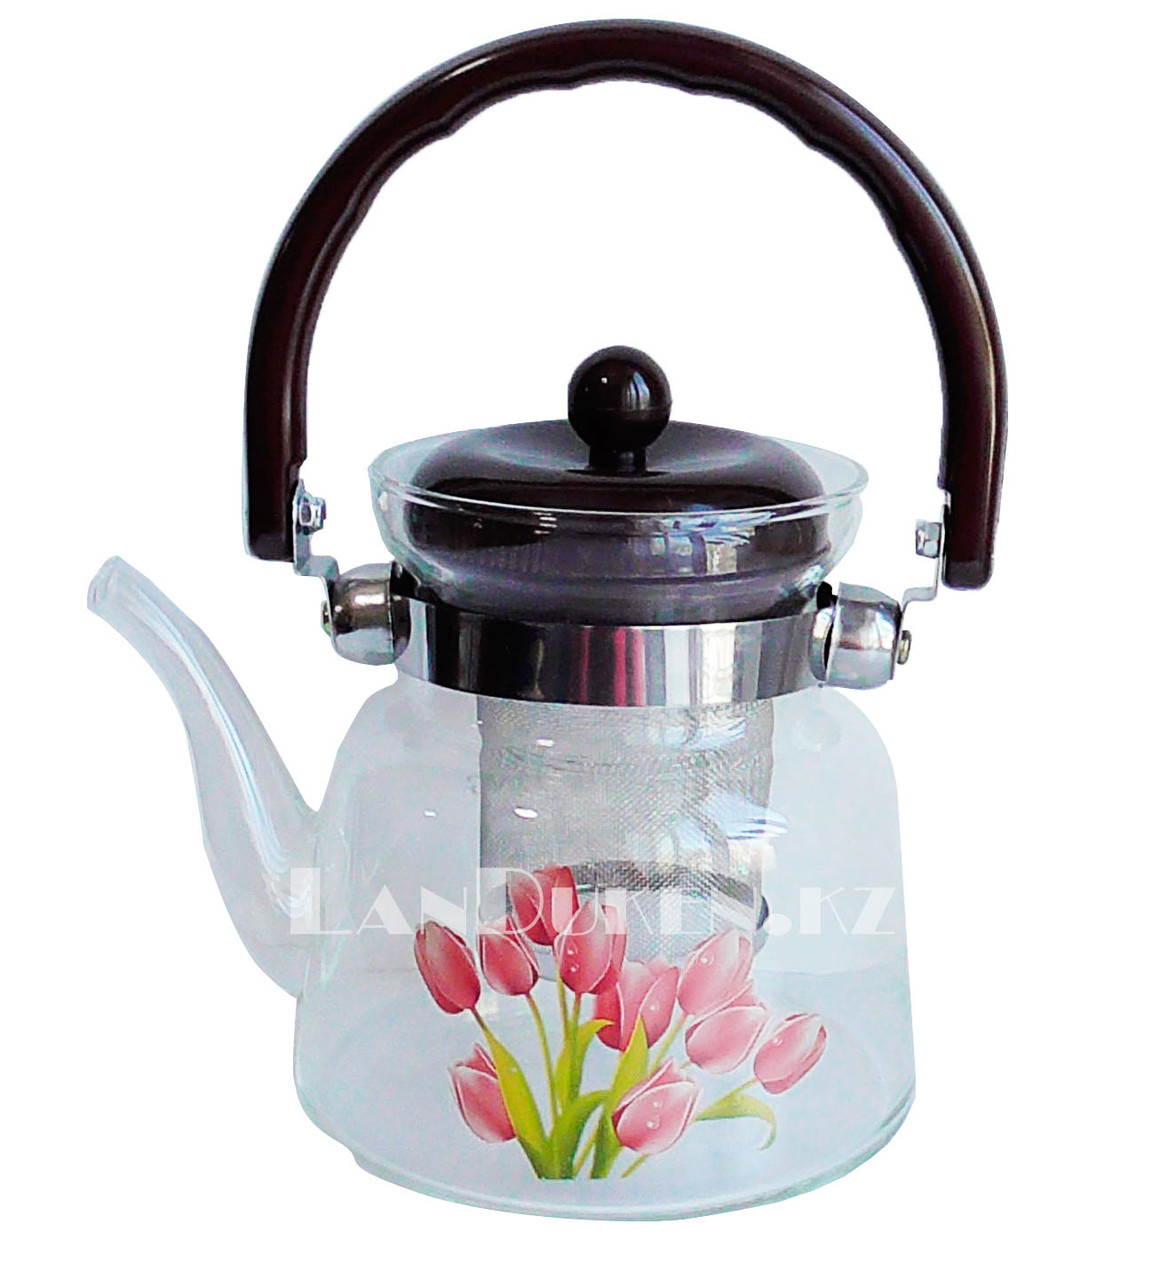 Заварочный стеклянный чайник для чая и кофе 800 ml (Cofee and tea), заварной чайник, чайник для плиты, фото 1